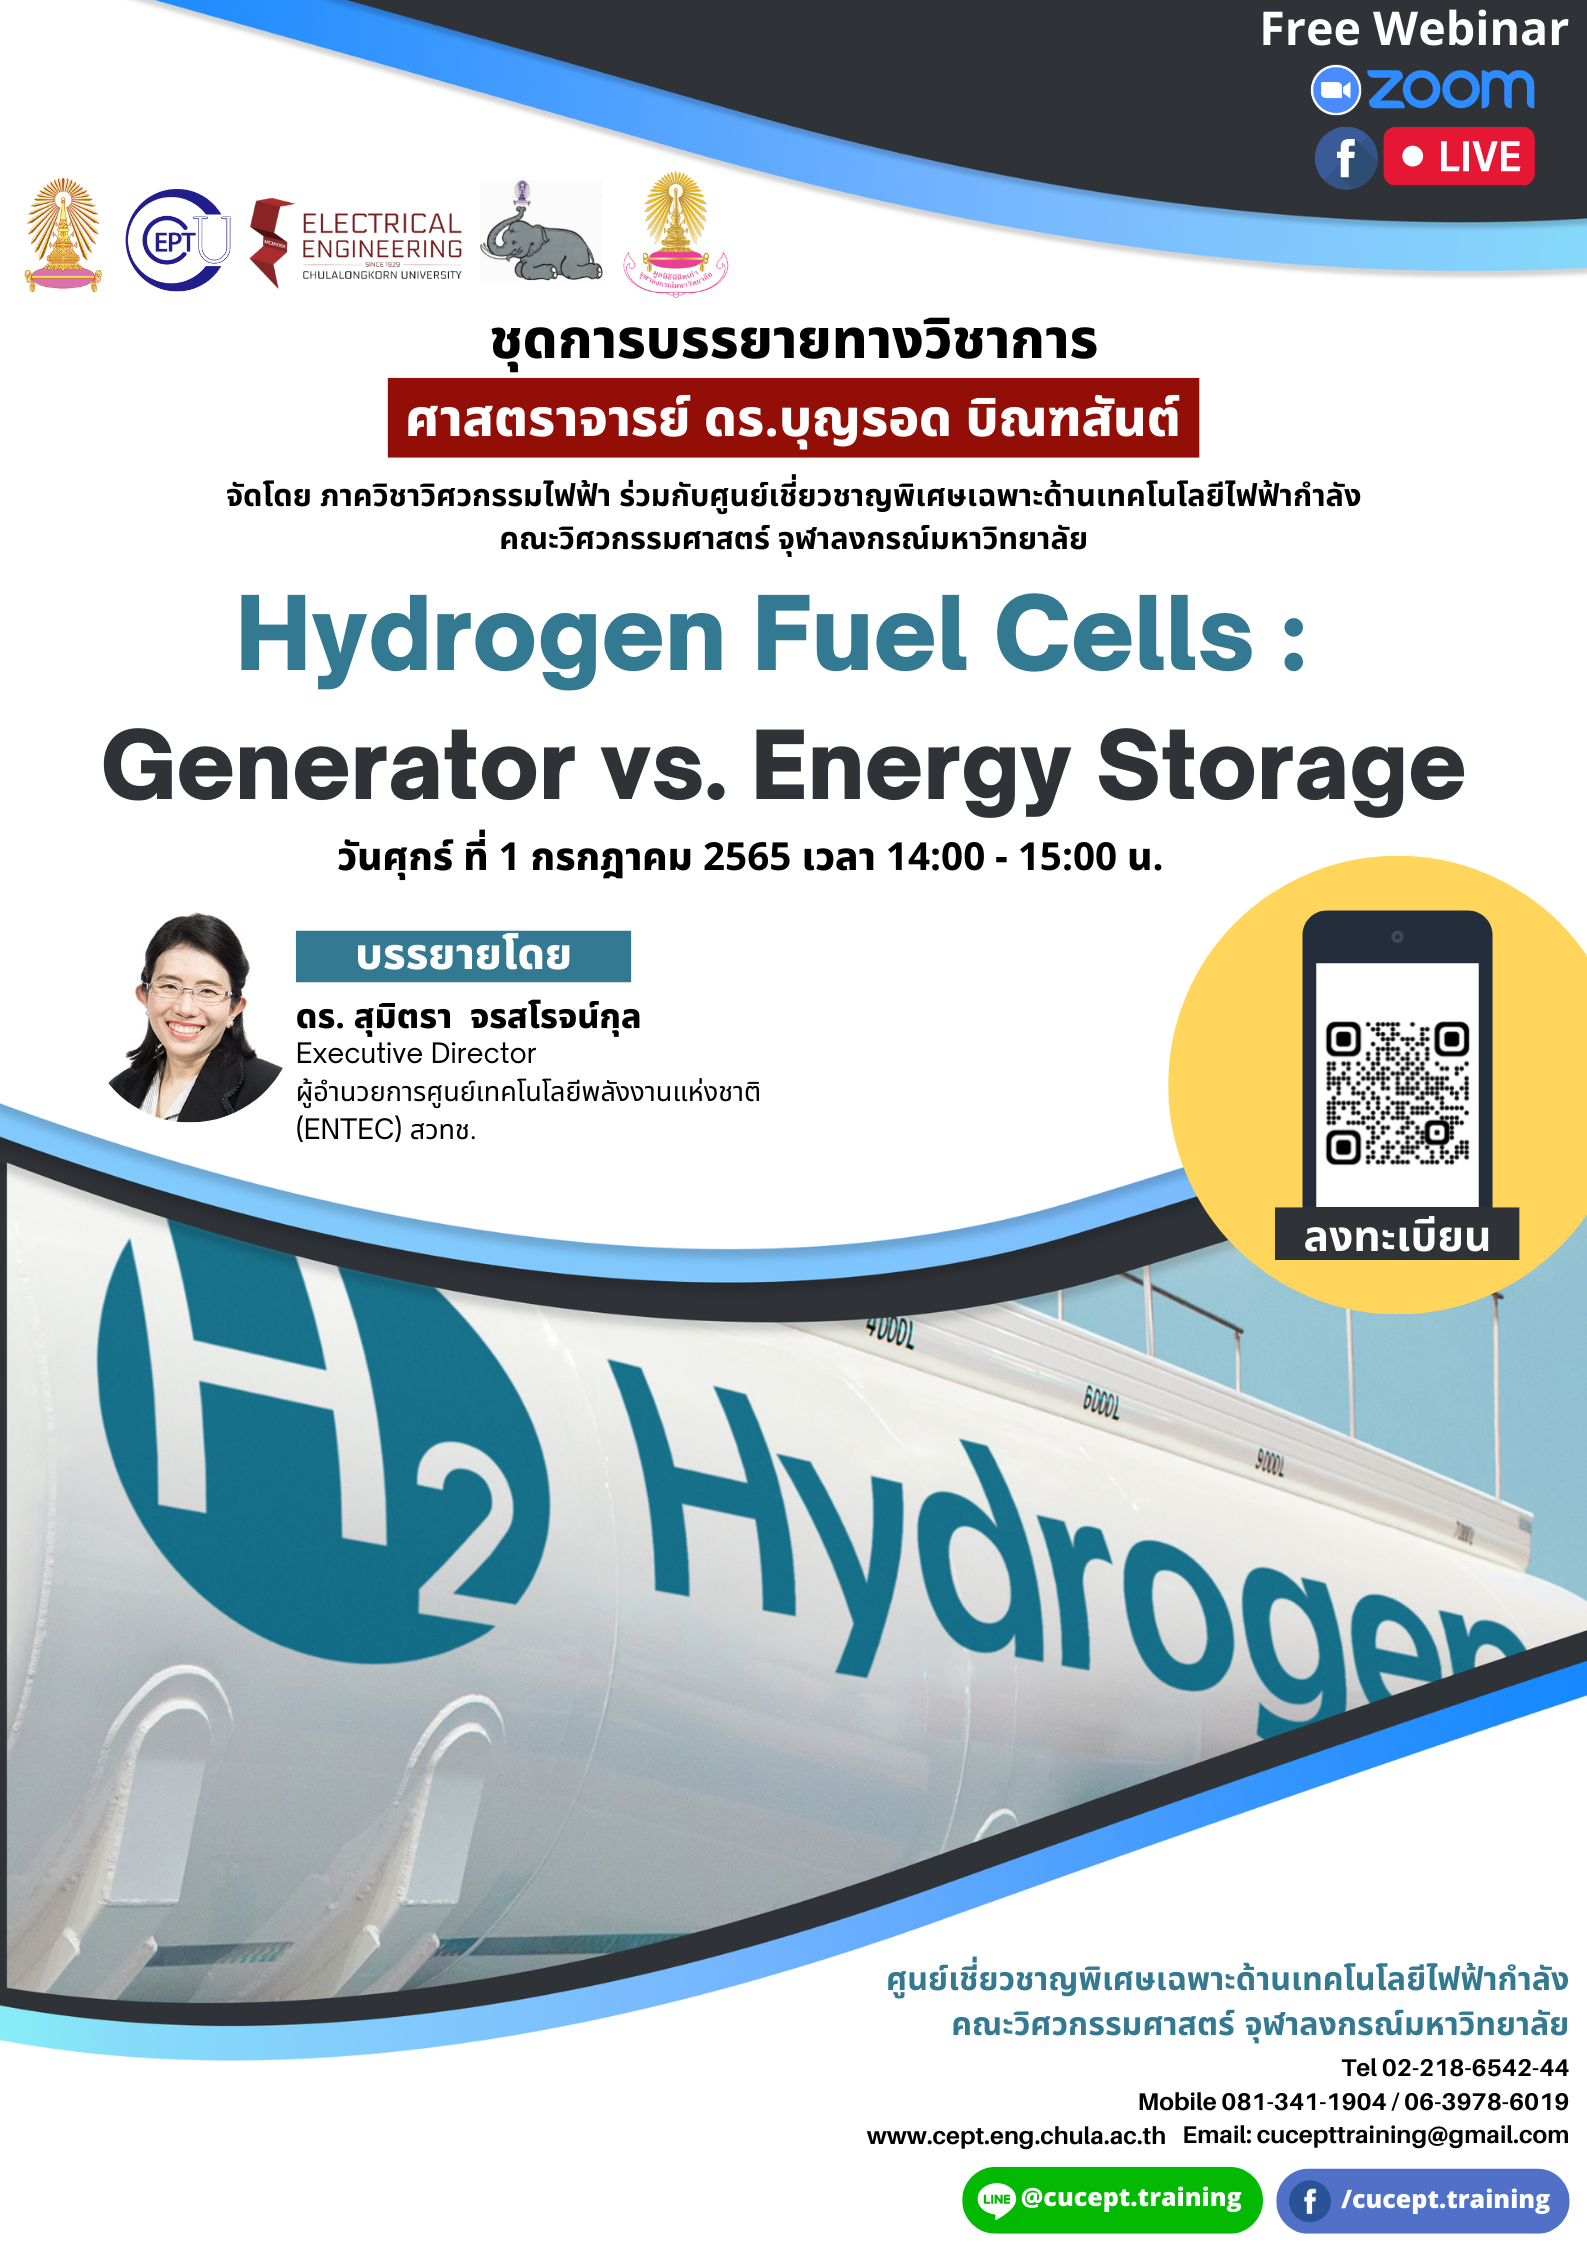 เรียนเชิญฟังบรรยาย Online เรื่อง “Hydrogen Fuel Cells : Generator vs. Energy Storage”